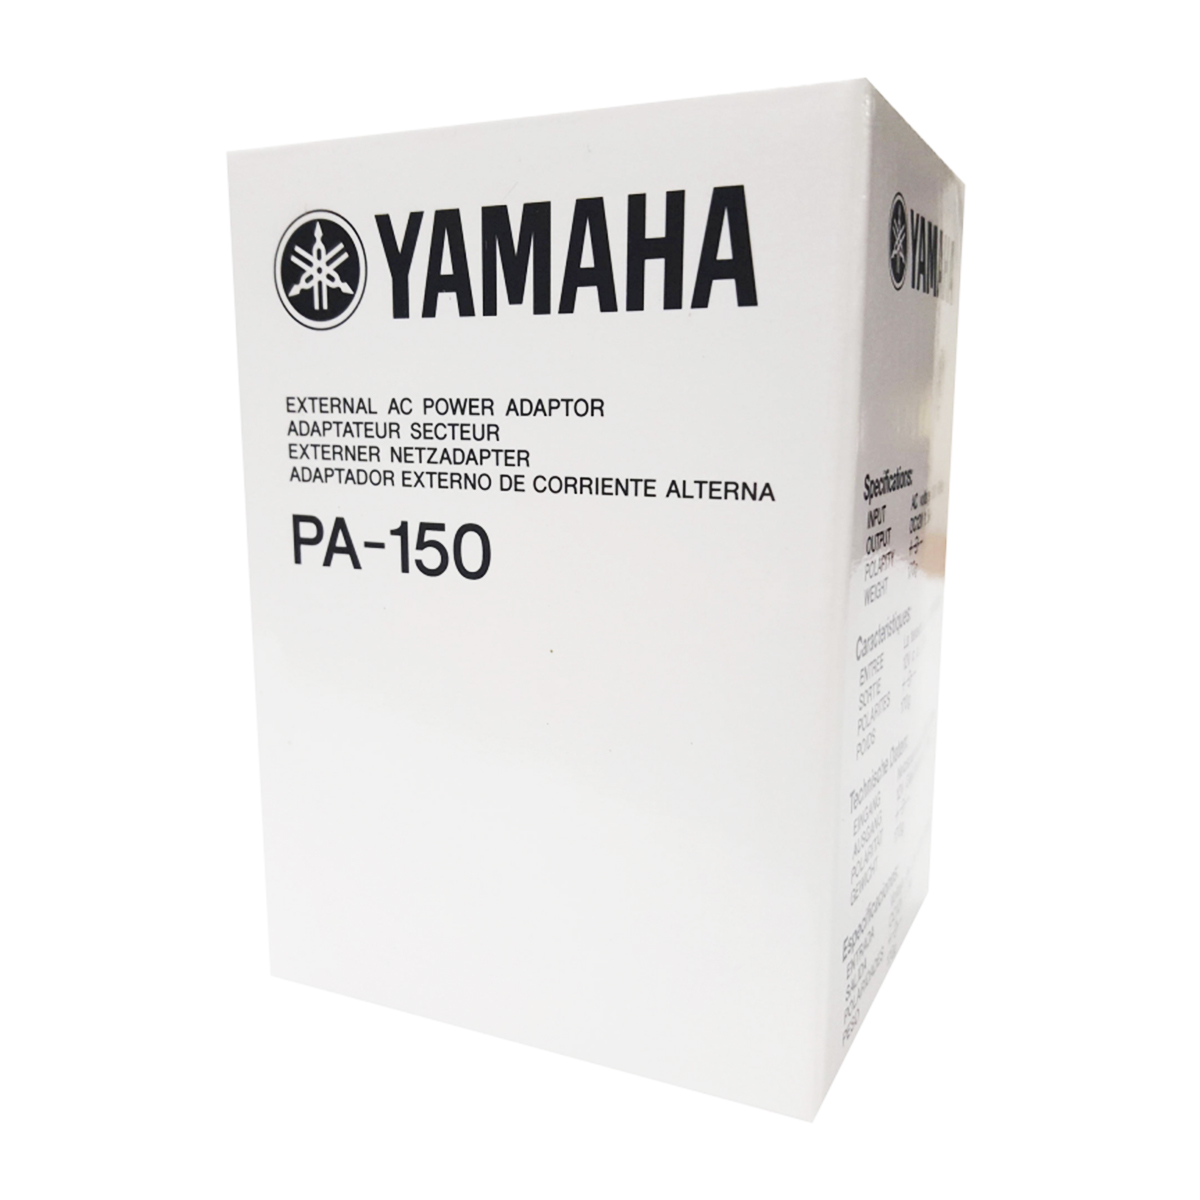 PA 150 Adaptador de corriente Yamaha Ditronics Ecuador 2